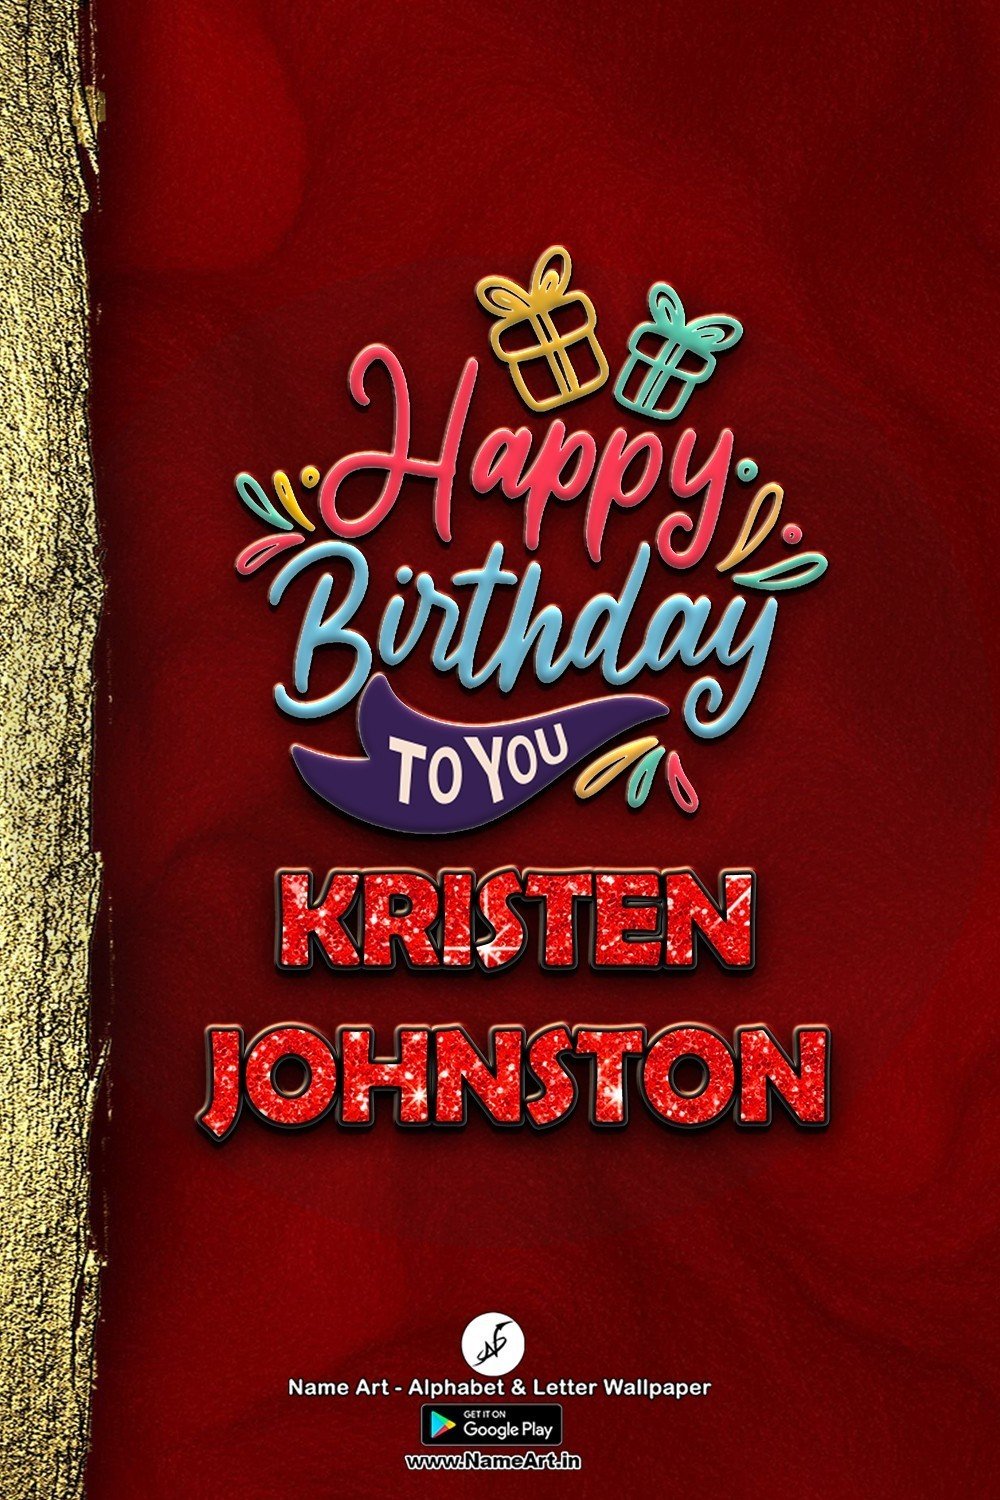 Kristen Johnston | Whatsapp Status Kristen Johnston In USA| Happy Birthday Kristen Johnston !! | New Whatsapp Status Kristen Johnston Images |